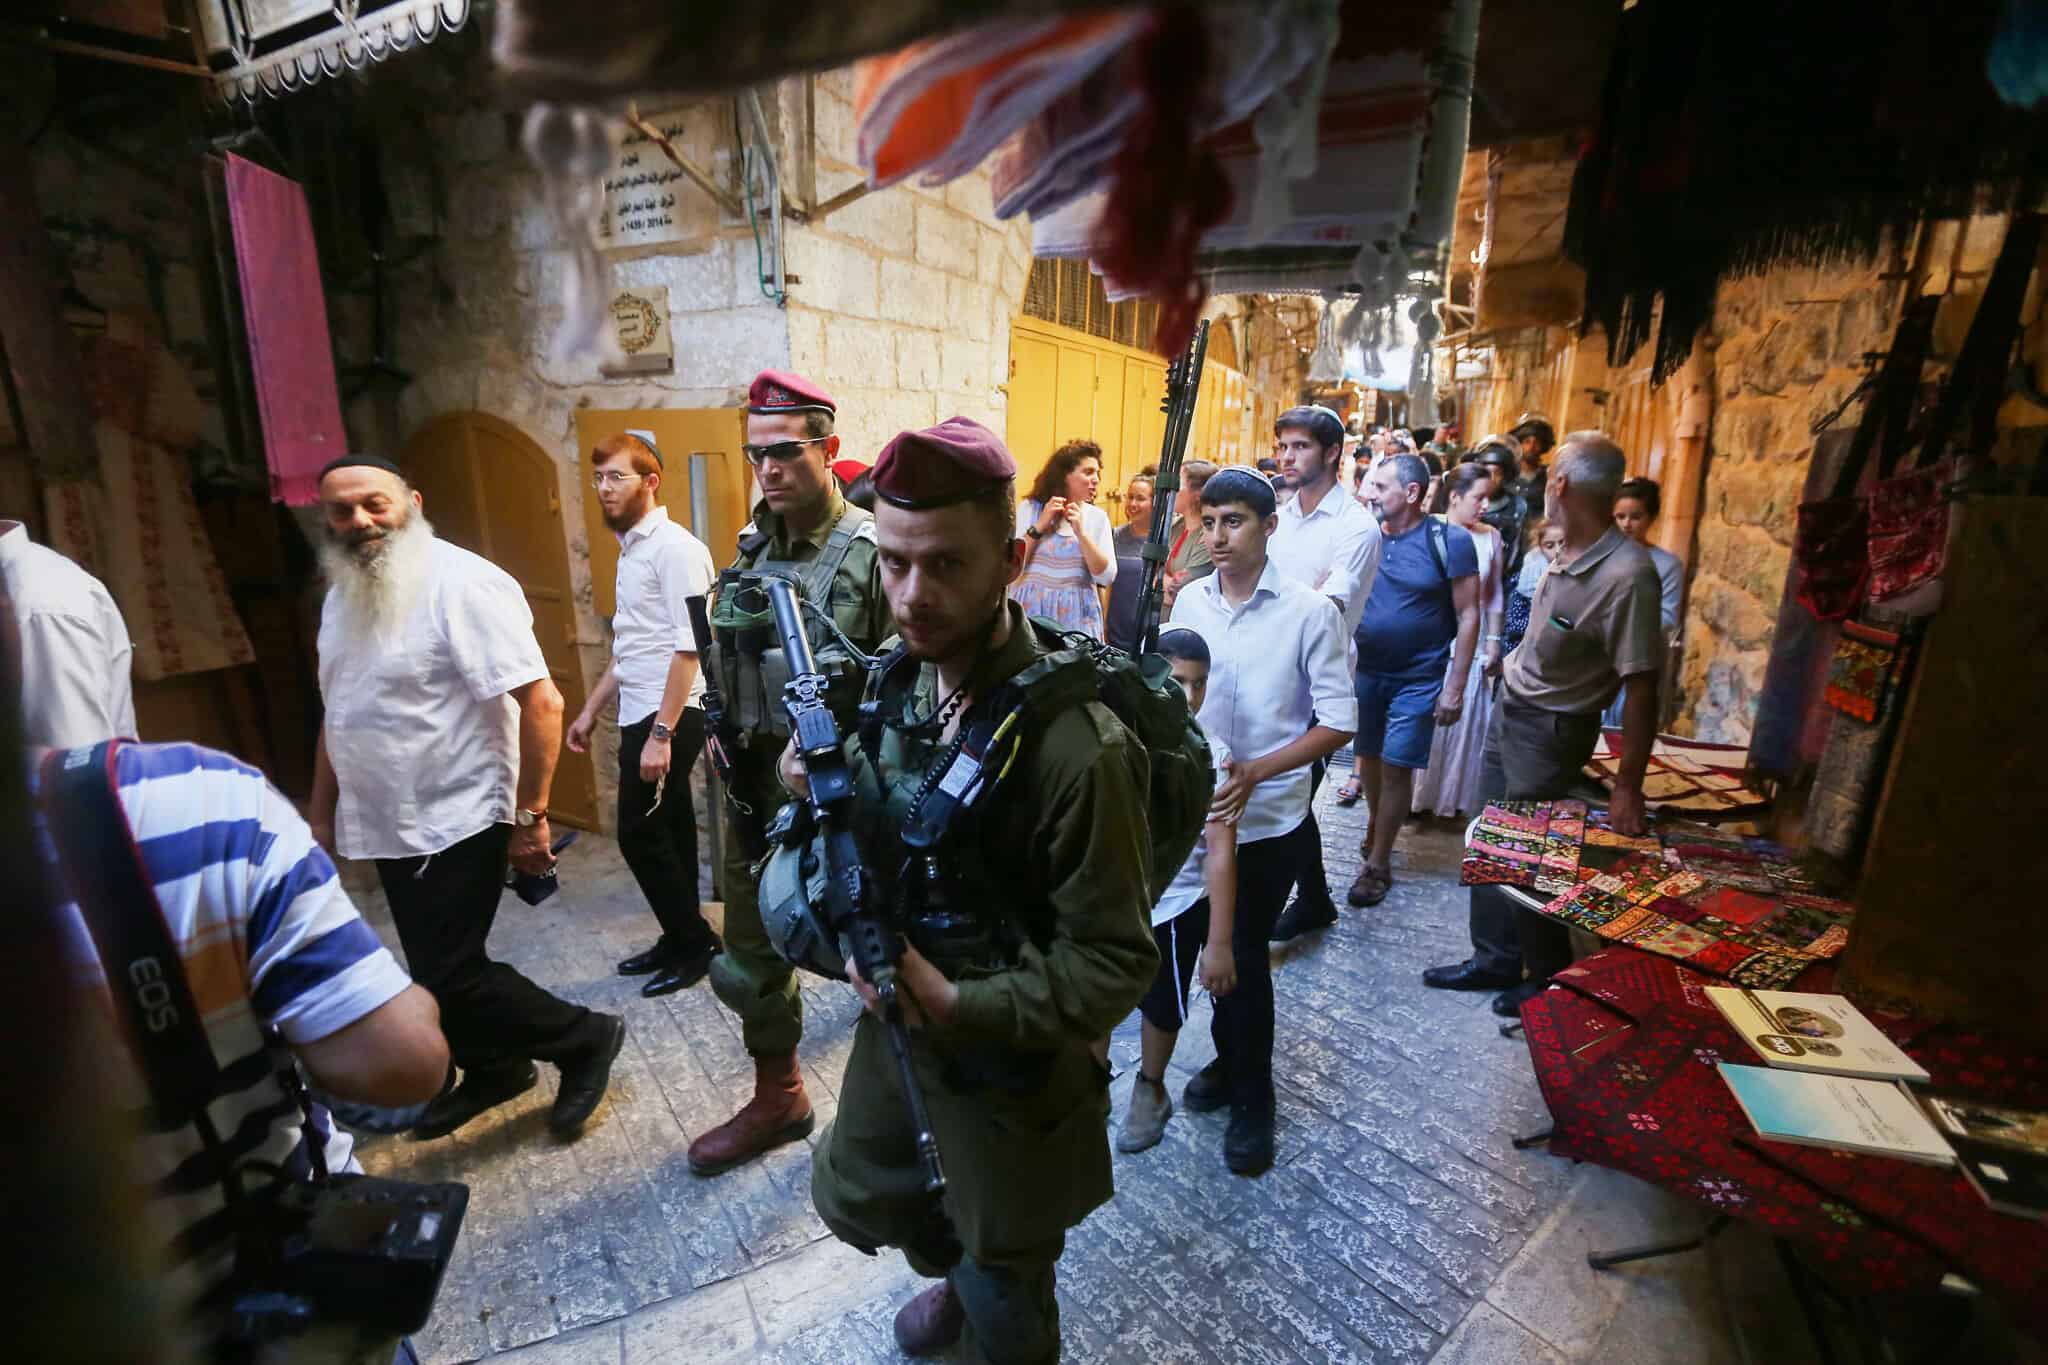 חיילים מאבטחים יהודים בסיור בחברון, ארכיון, למצולמים אין קשר לנאמר בכתבה (צילום: Wisam Hashlamoun/Flash90)